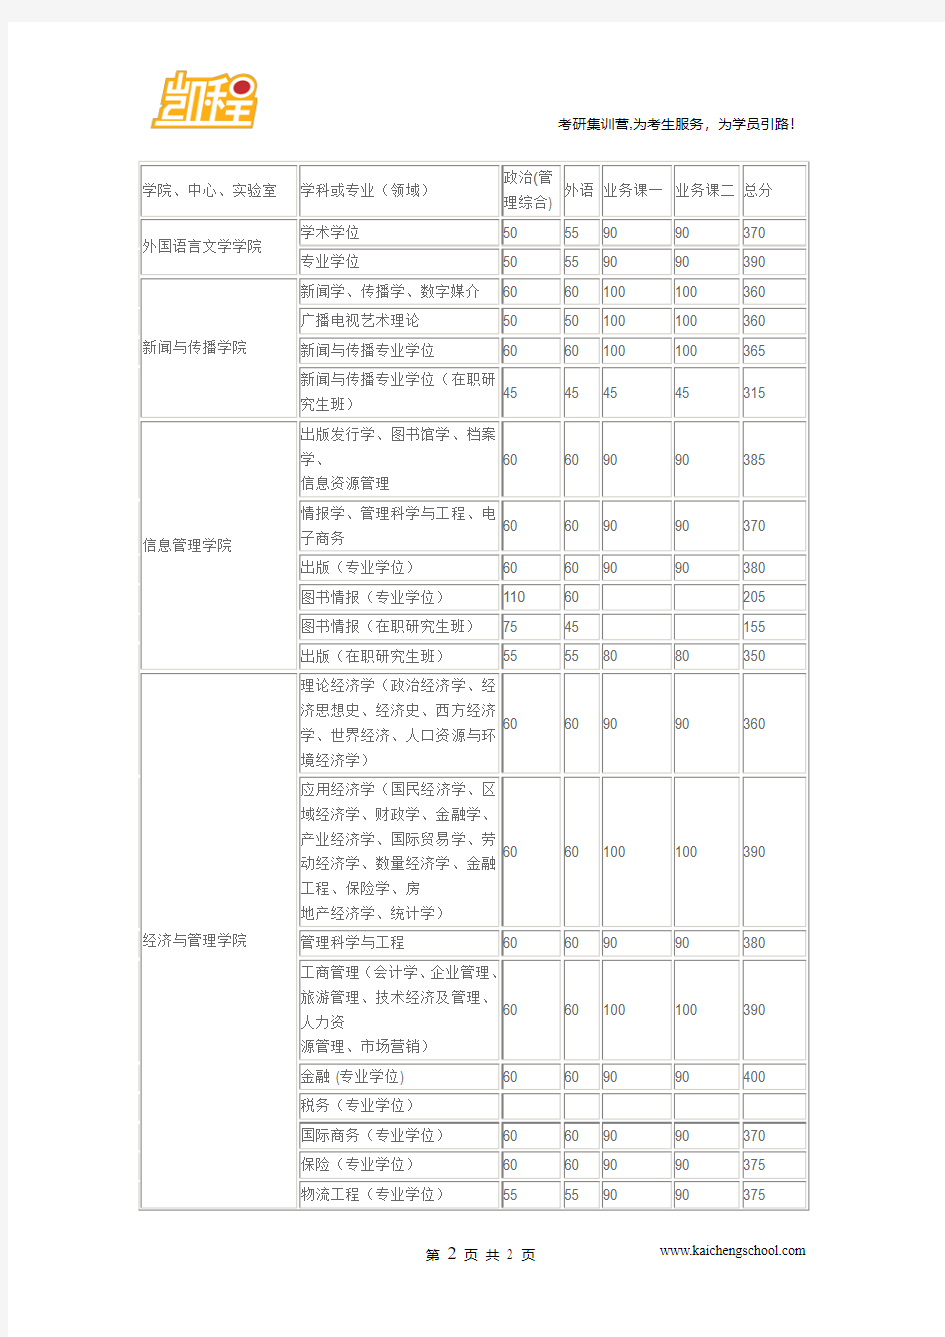 2015年武汉大学国际商务(专业学位)复试分数线是370分